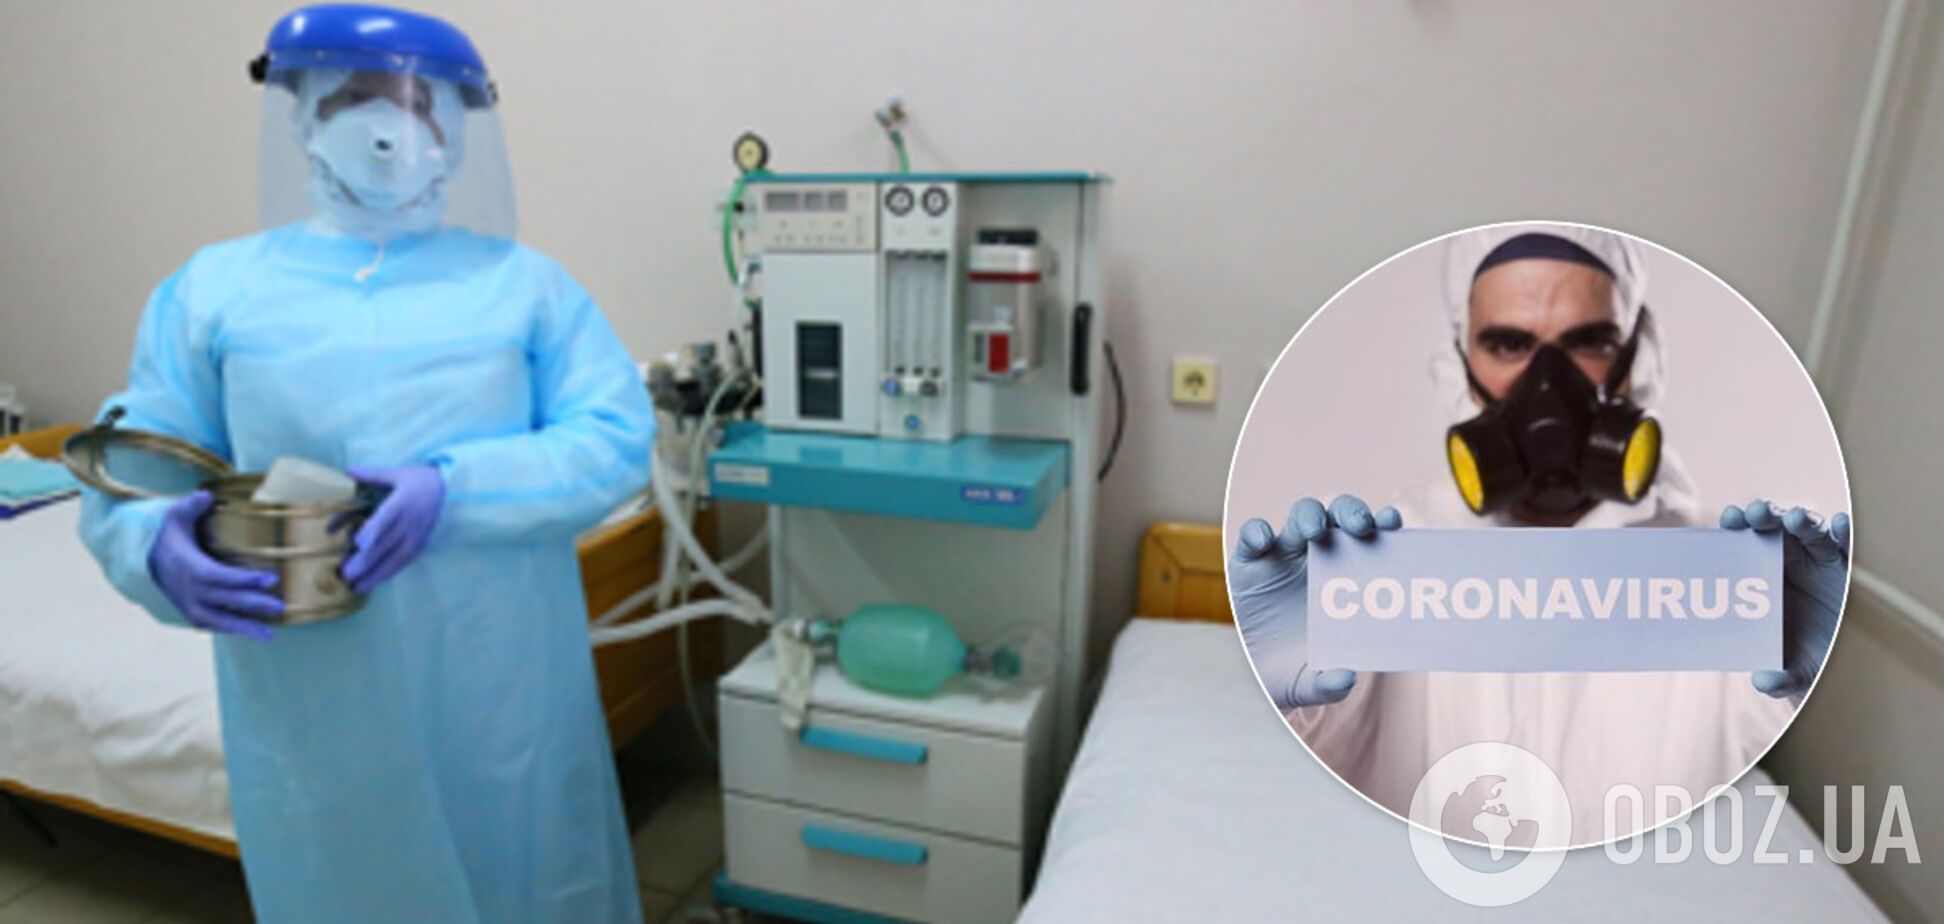 Украинка заподозрила у себя коронавирус и проверила, как спасают в наших больницах